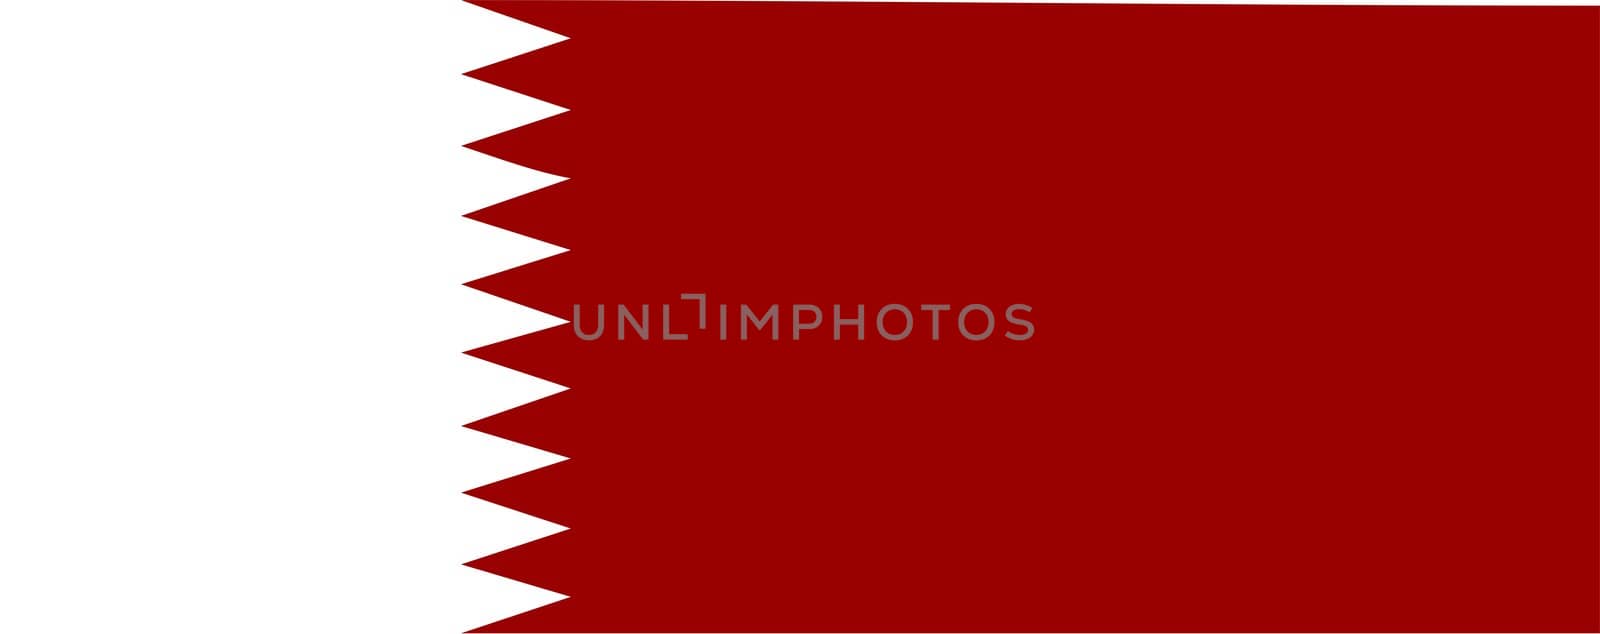 qatar qatar national flag symbol bunting middle east